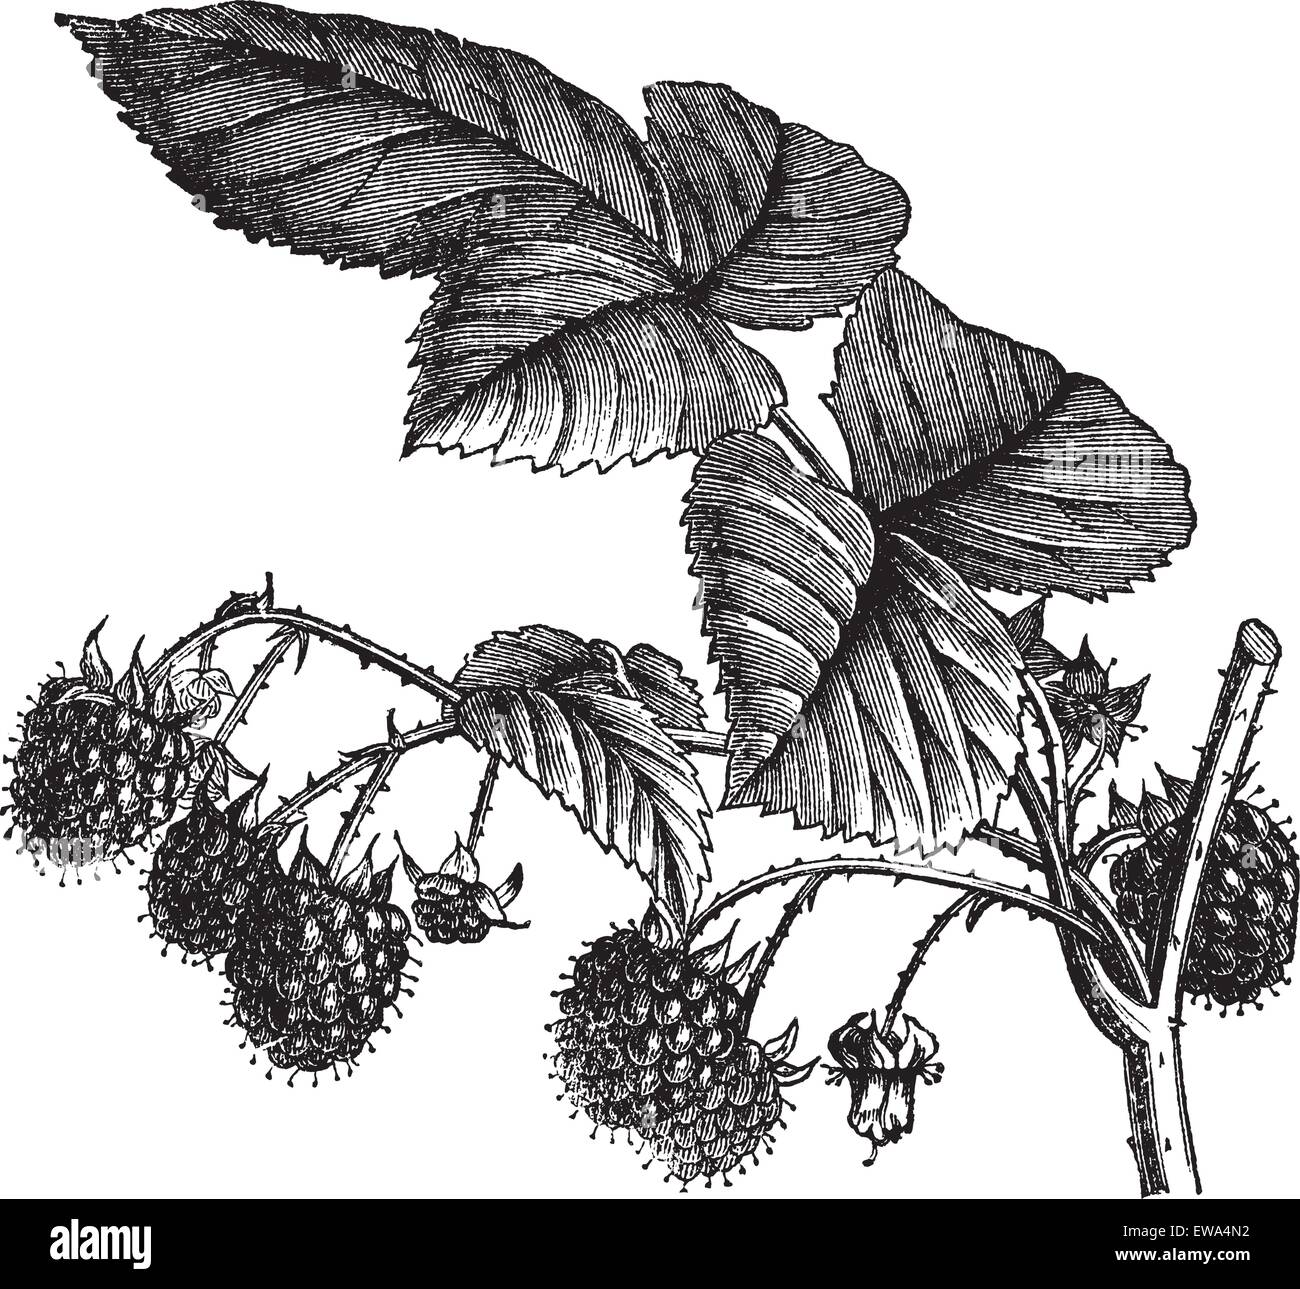 Rosso lampone o Rubus idaeus o unione di lampone o Framboise o lampone, vintage incisione. Vecchie illustrazioni incise di rosso lampone isolato su uno sfondo bianco. Illustrazione Vettoriale